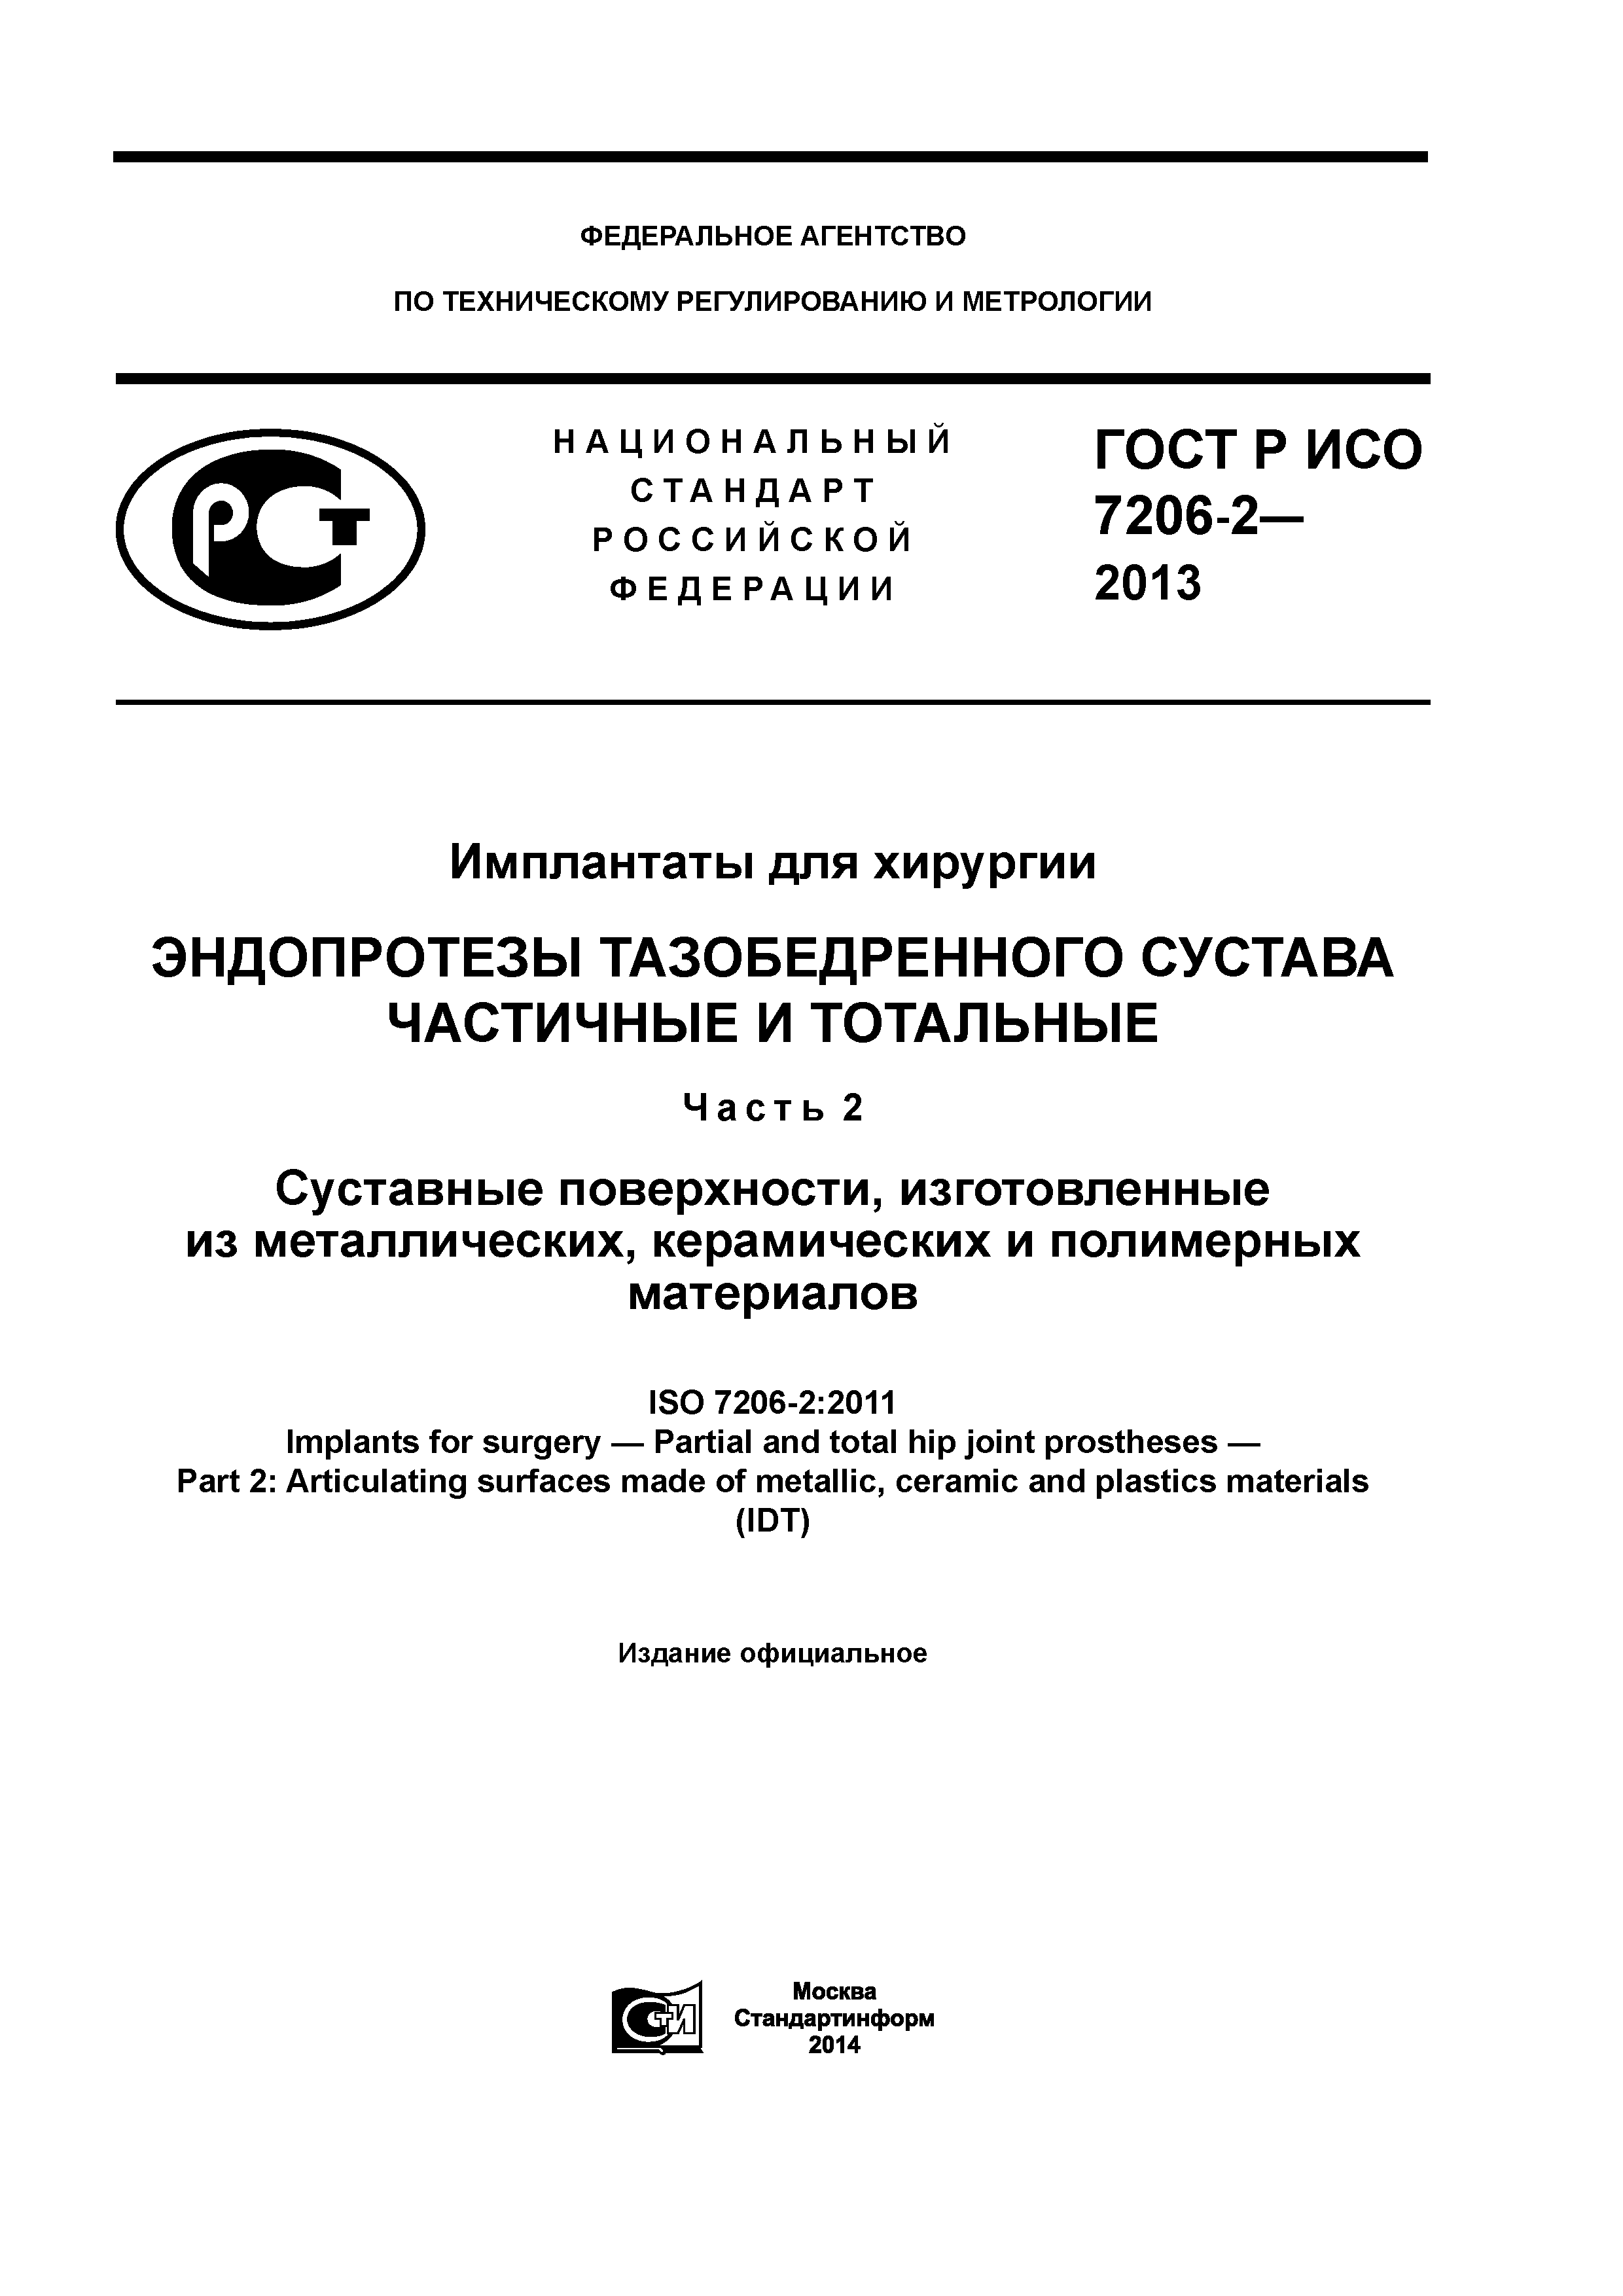 ГОСТ Р ИСО 7206-2-2013